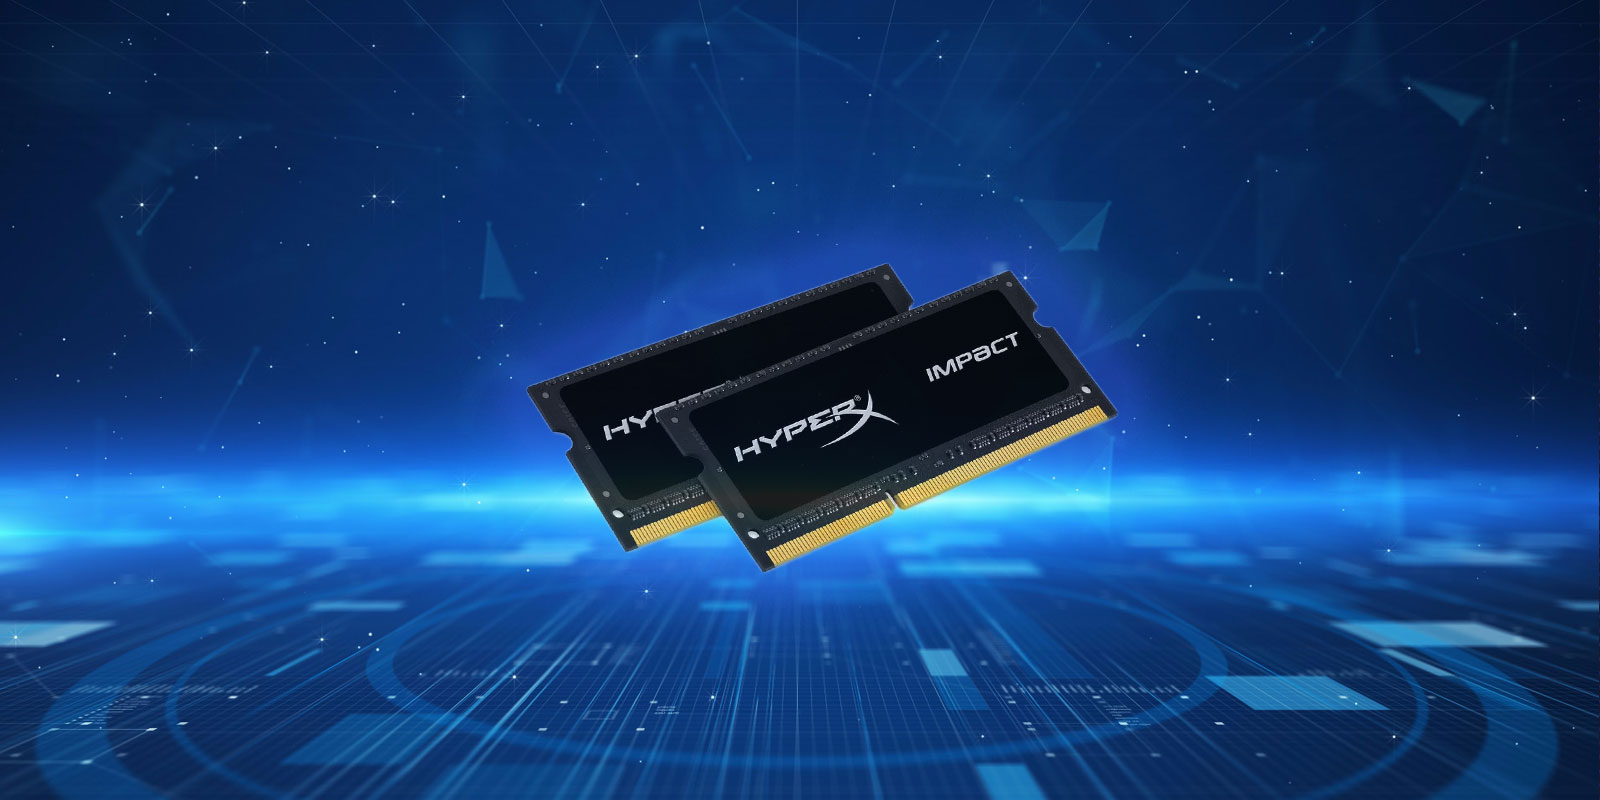 HyperX DDR3 Laptop RAM Review